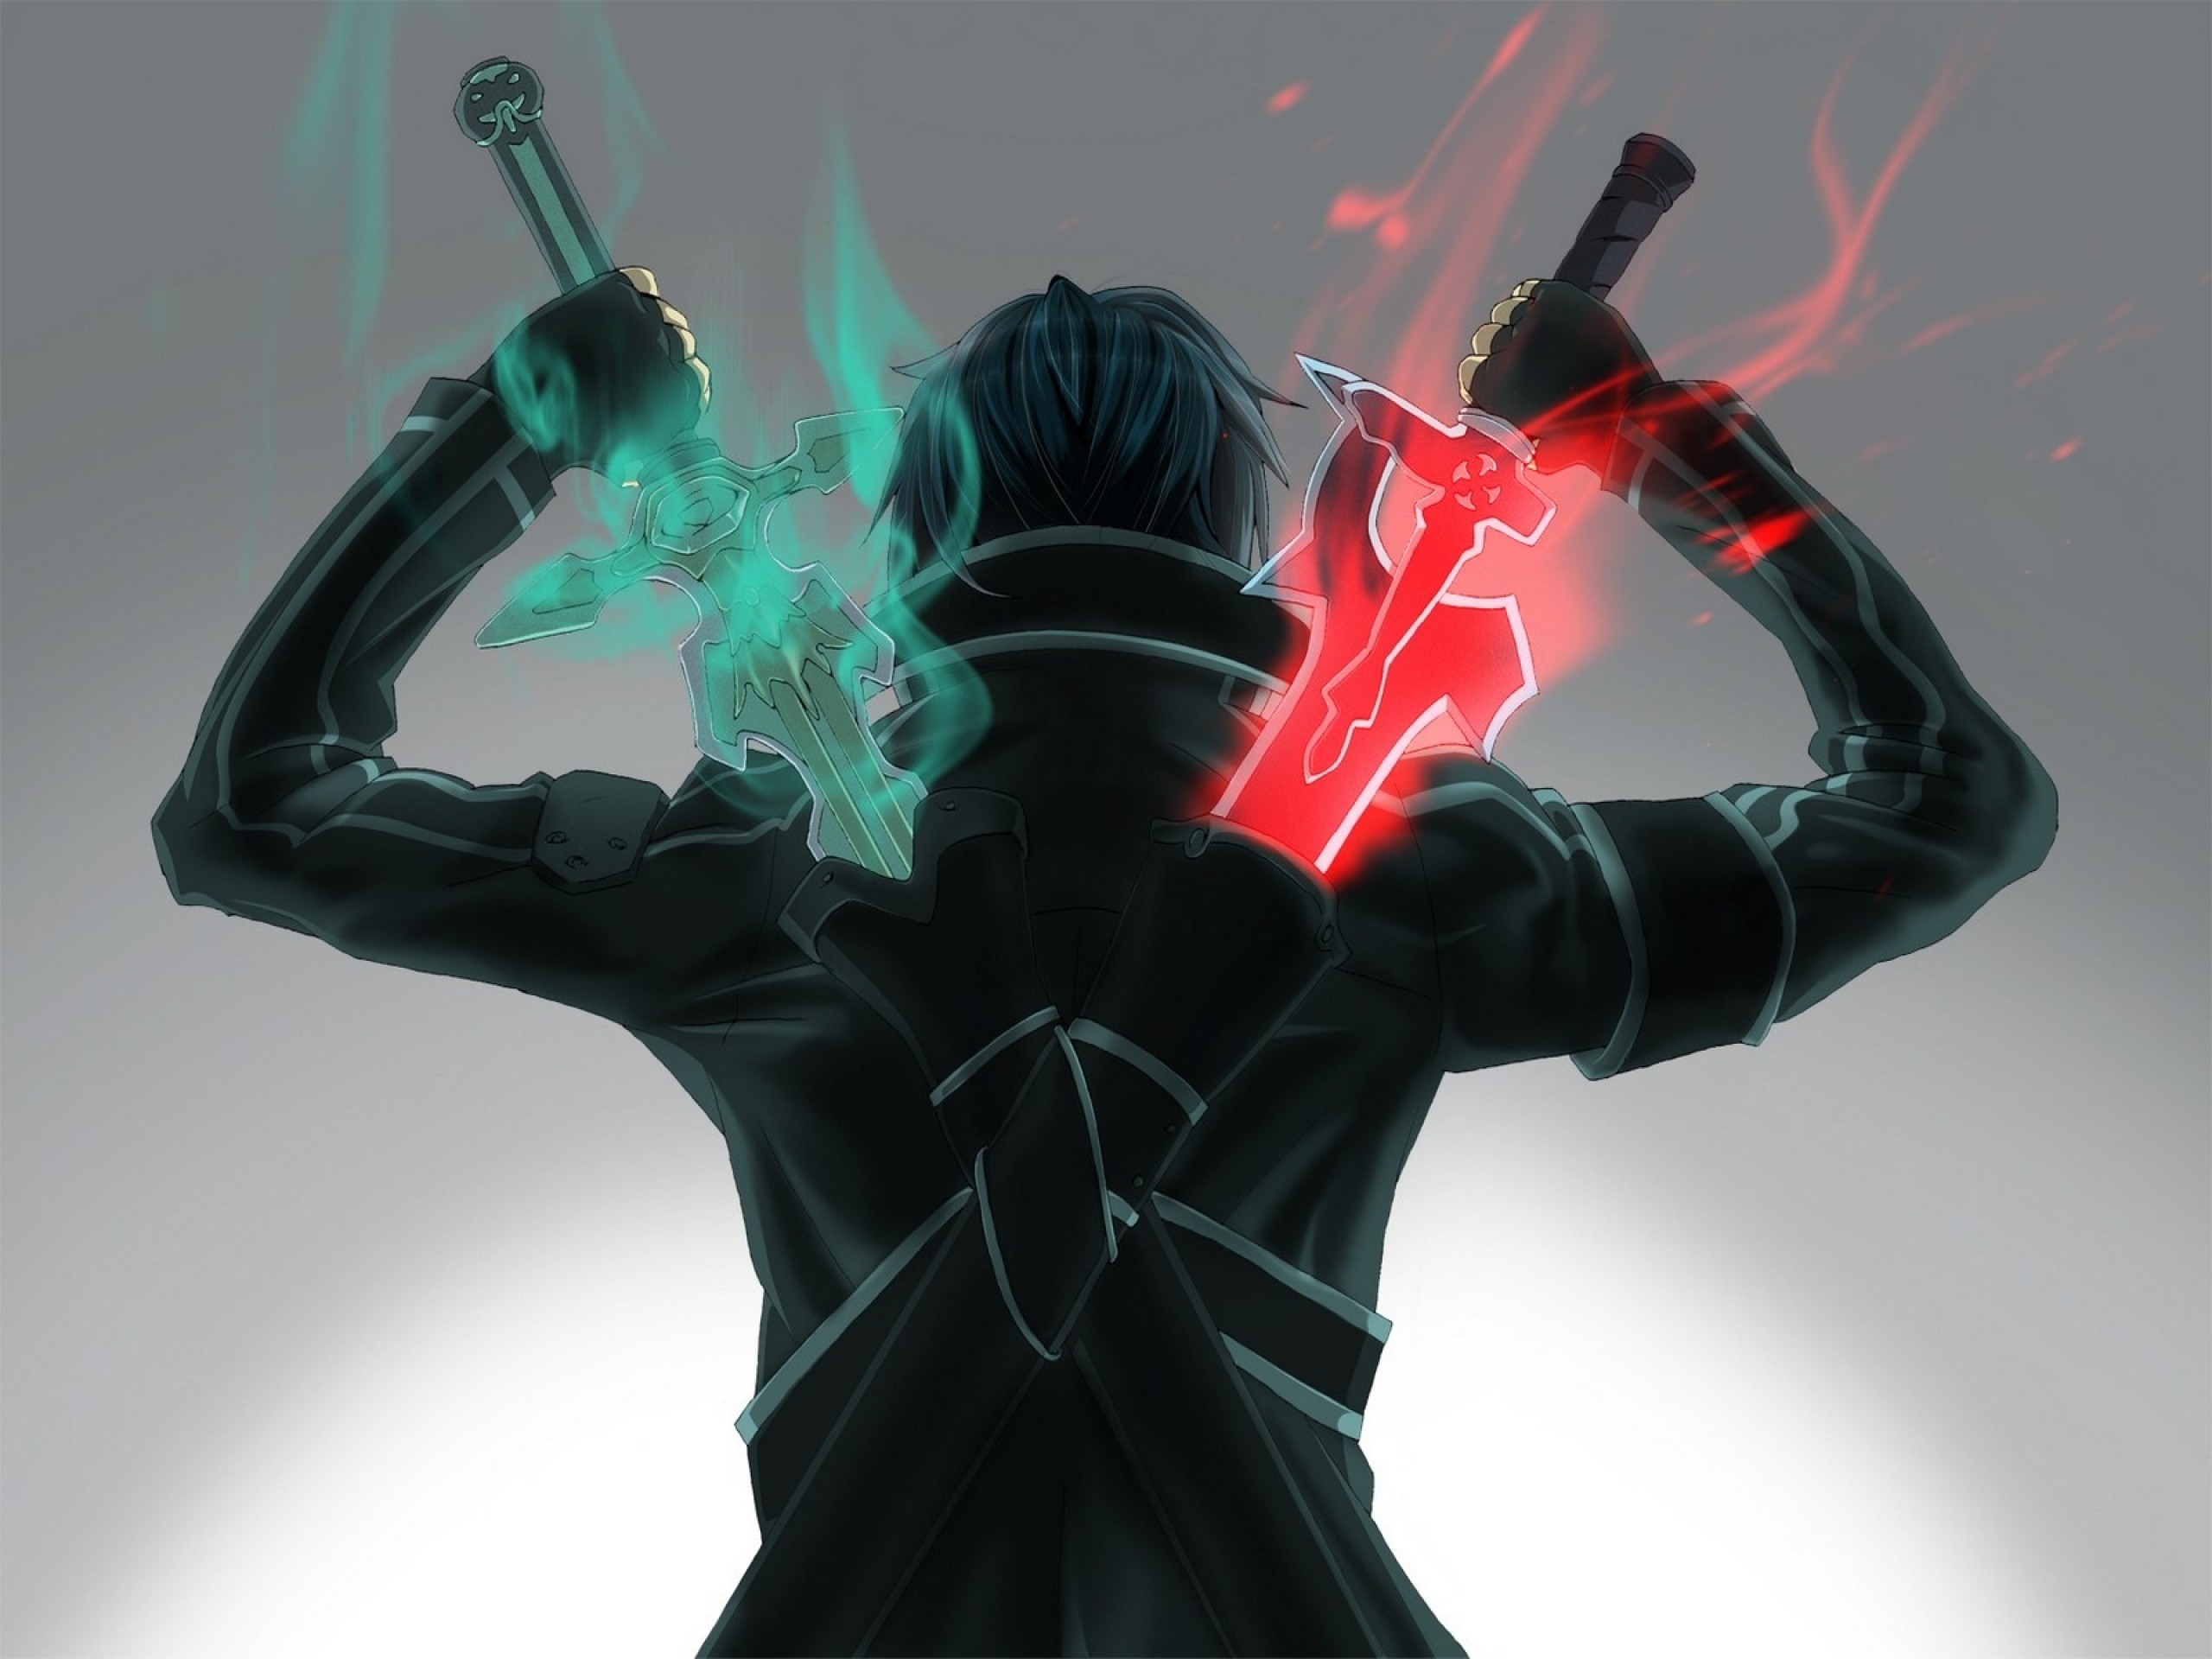 Tải Hình Nền Anime Sword Art Online Full Hd Miễn Phí